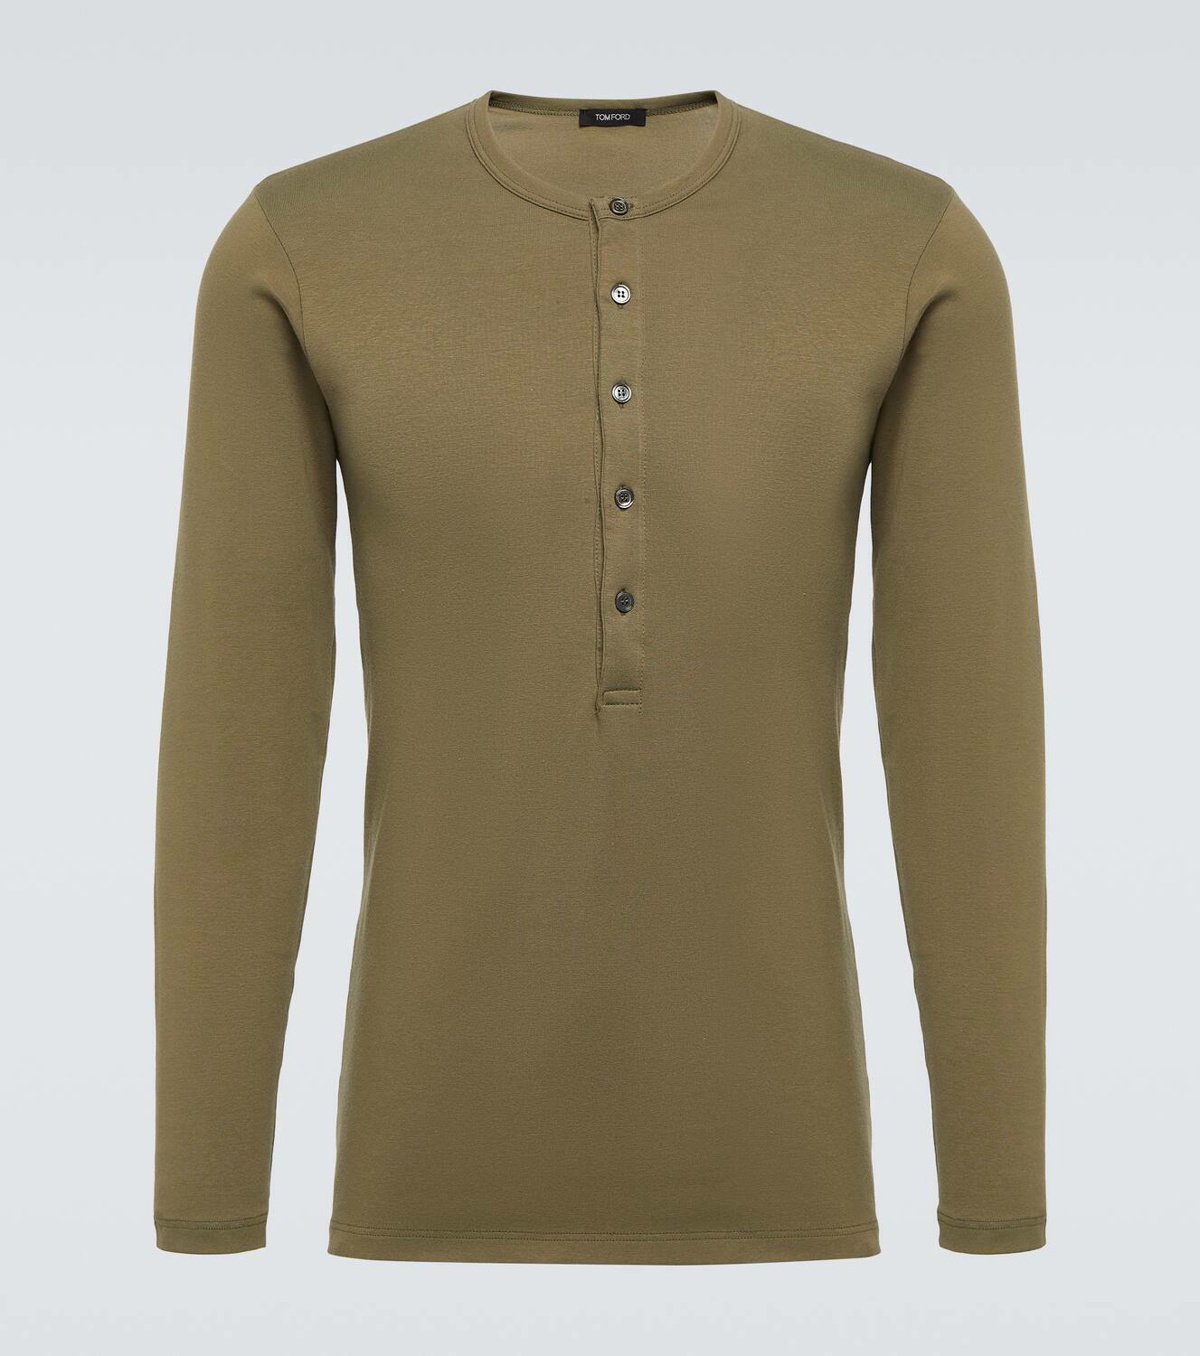 Tom Ford Cotton-blend jersey Henley shirt